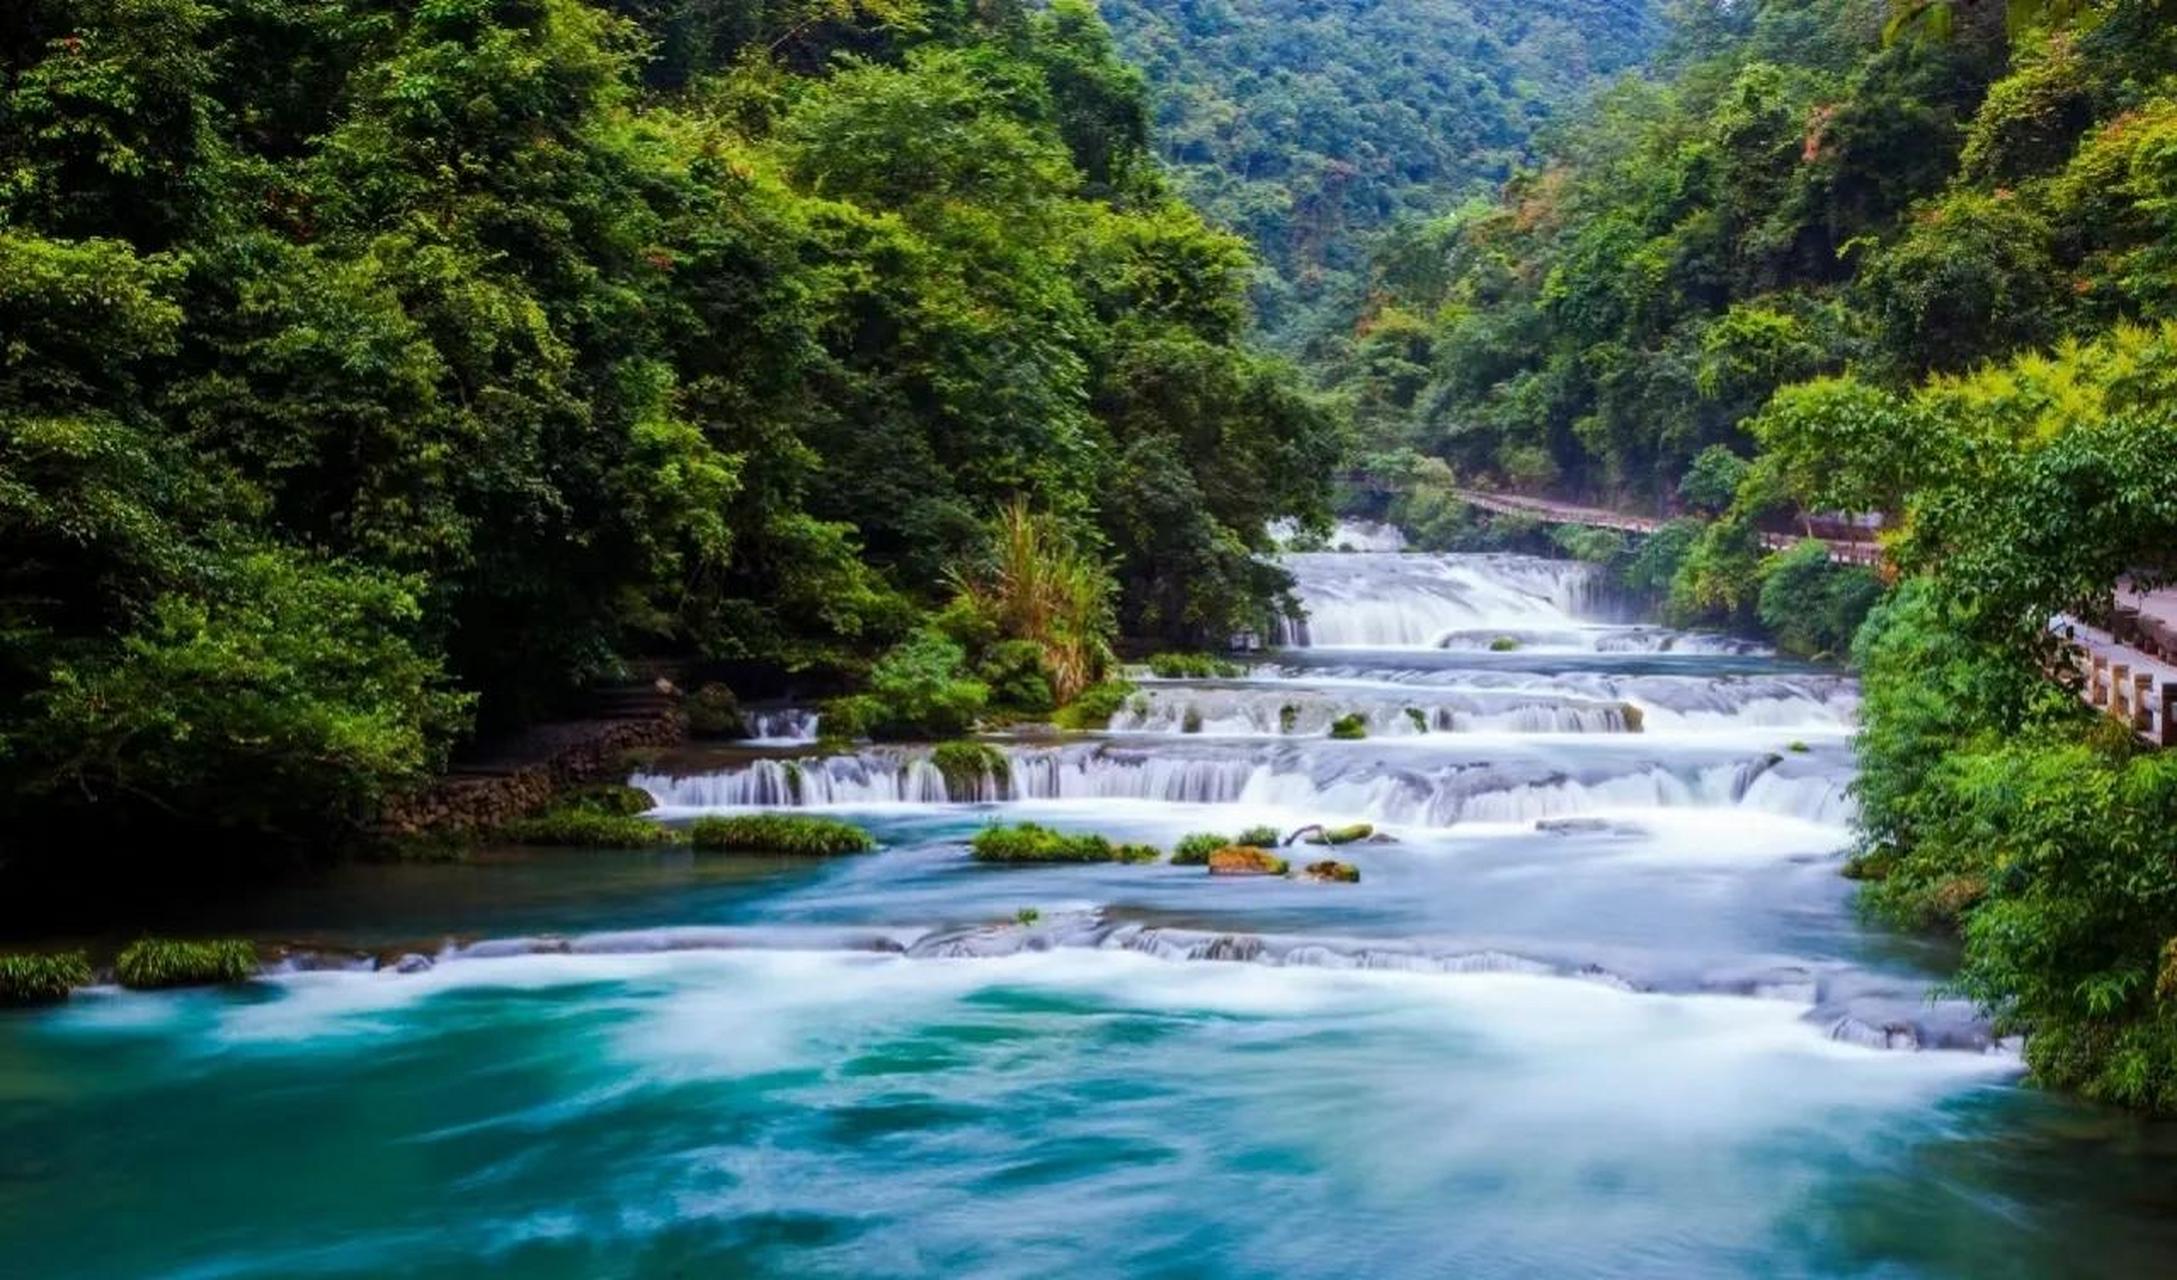 贵州荔波小七孔,水上森林,峡谷瀑布,还有绿宝石般的潭水,南方的避暑